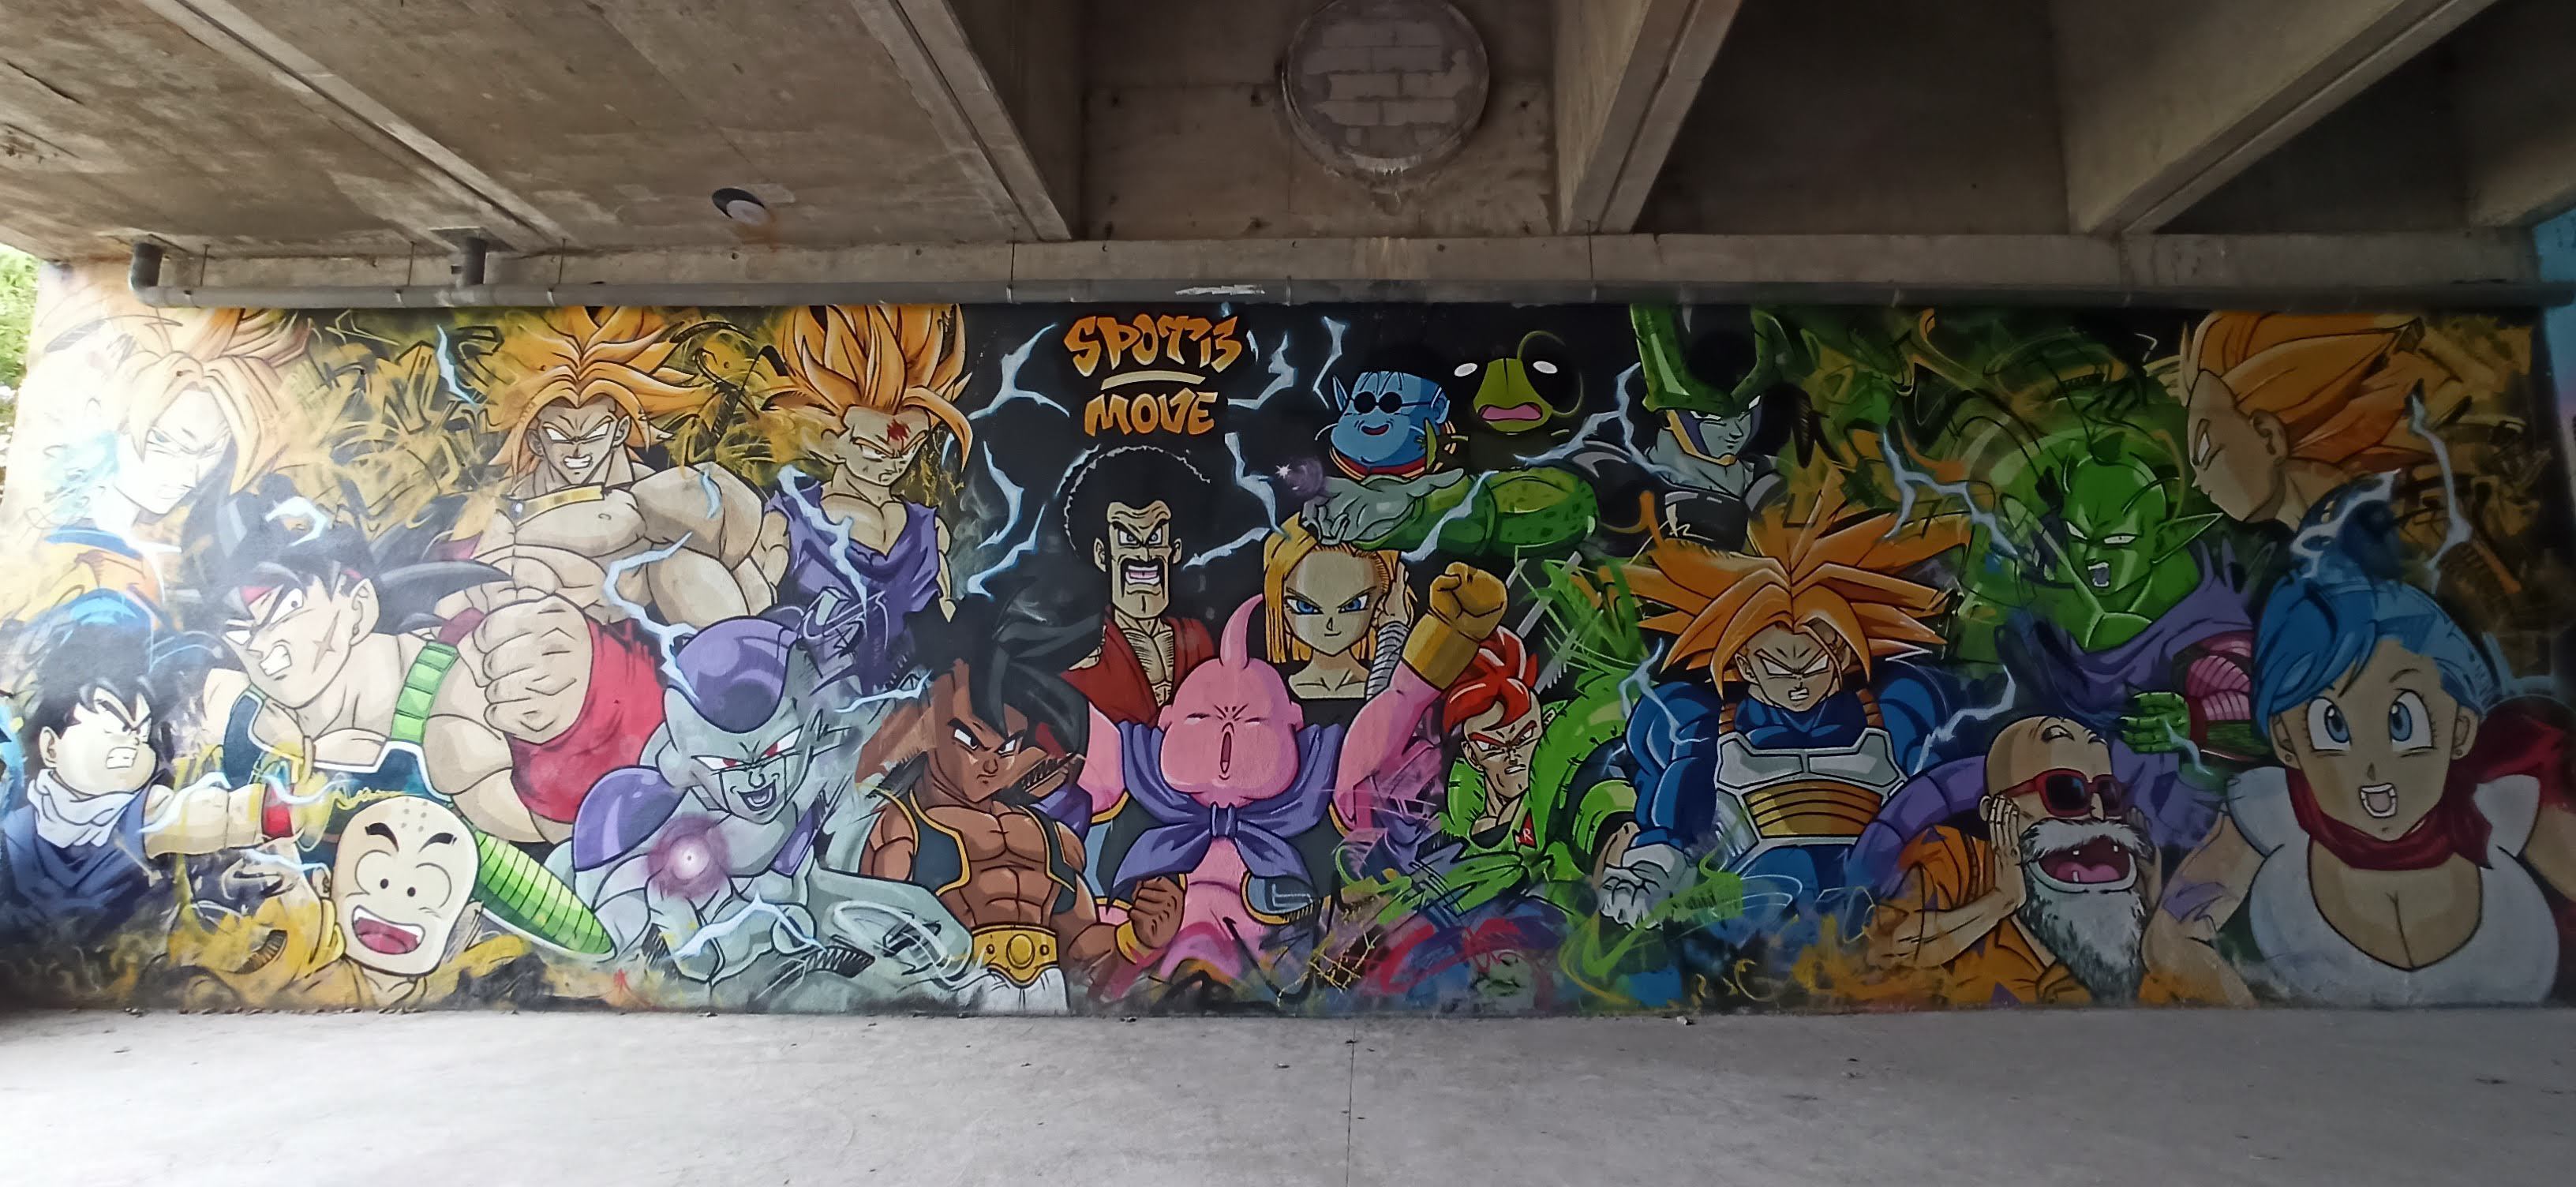 Graffiti 5495 Dragon ball Z capturé par Rabot à Paris France